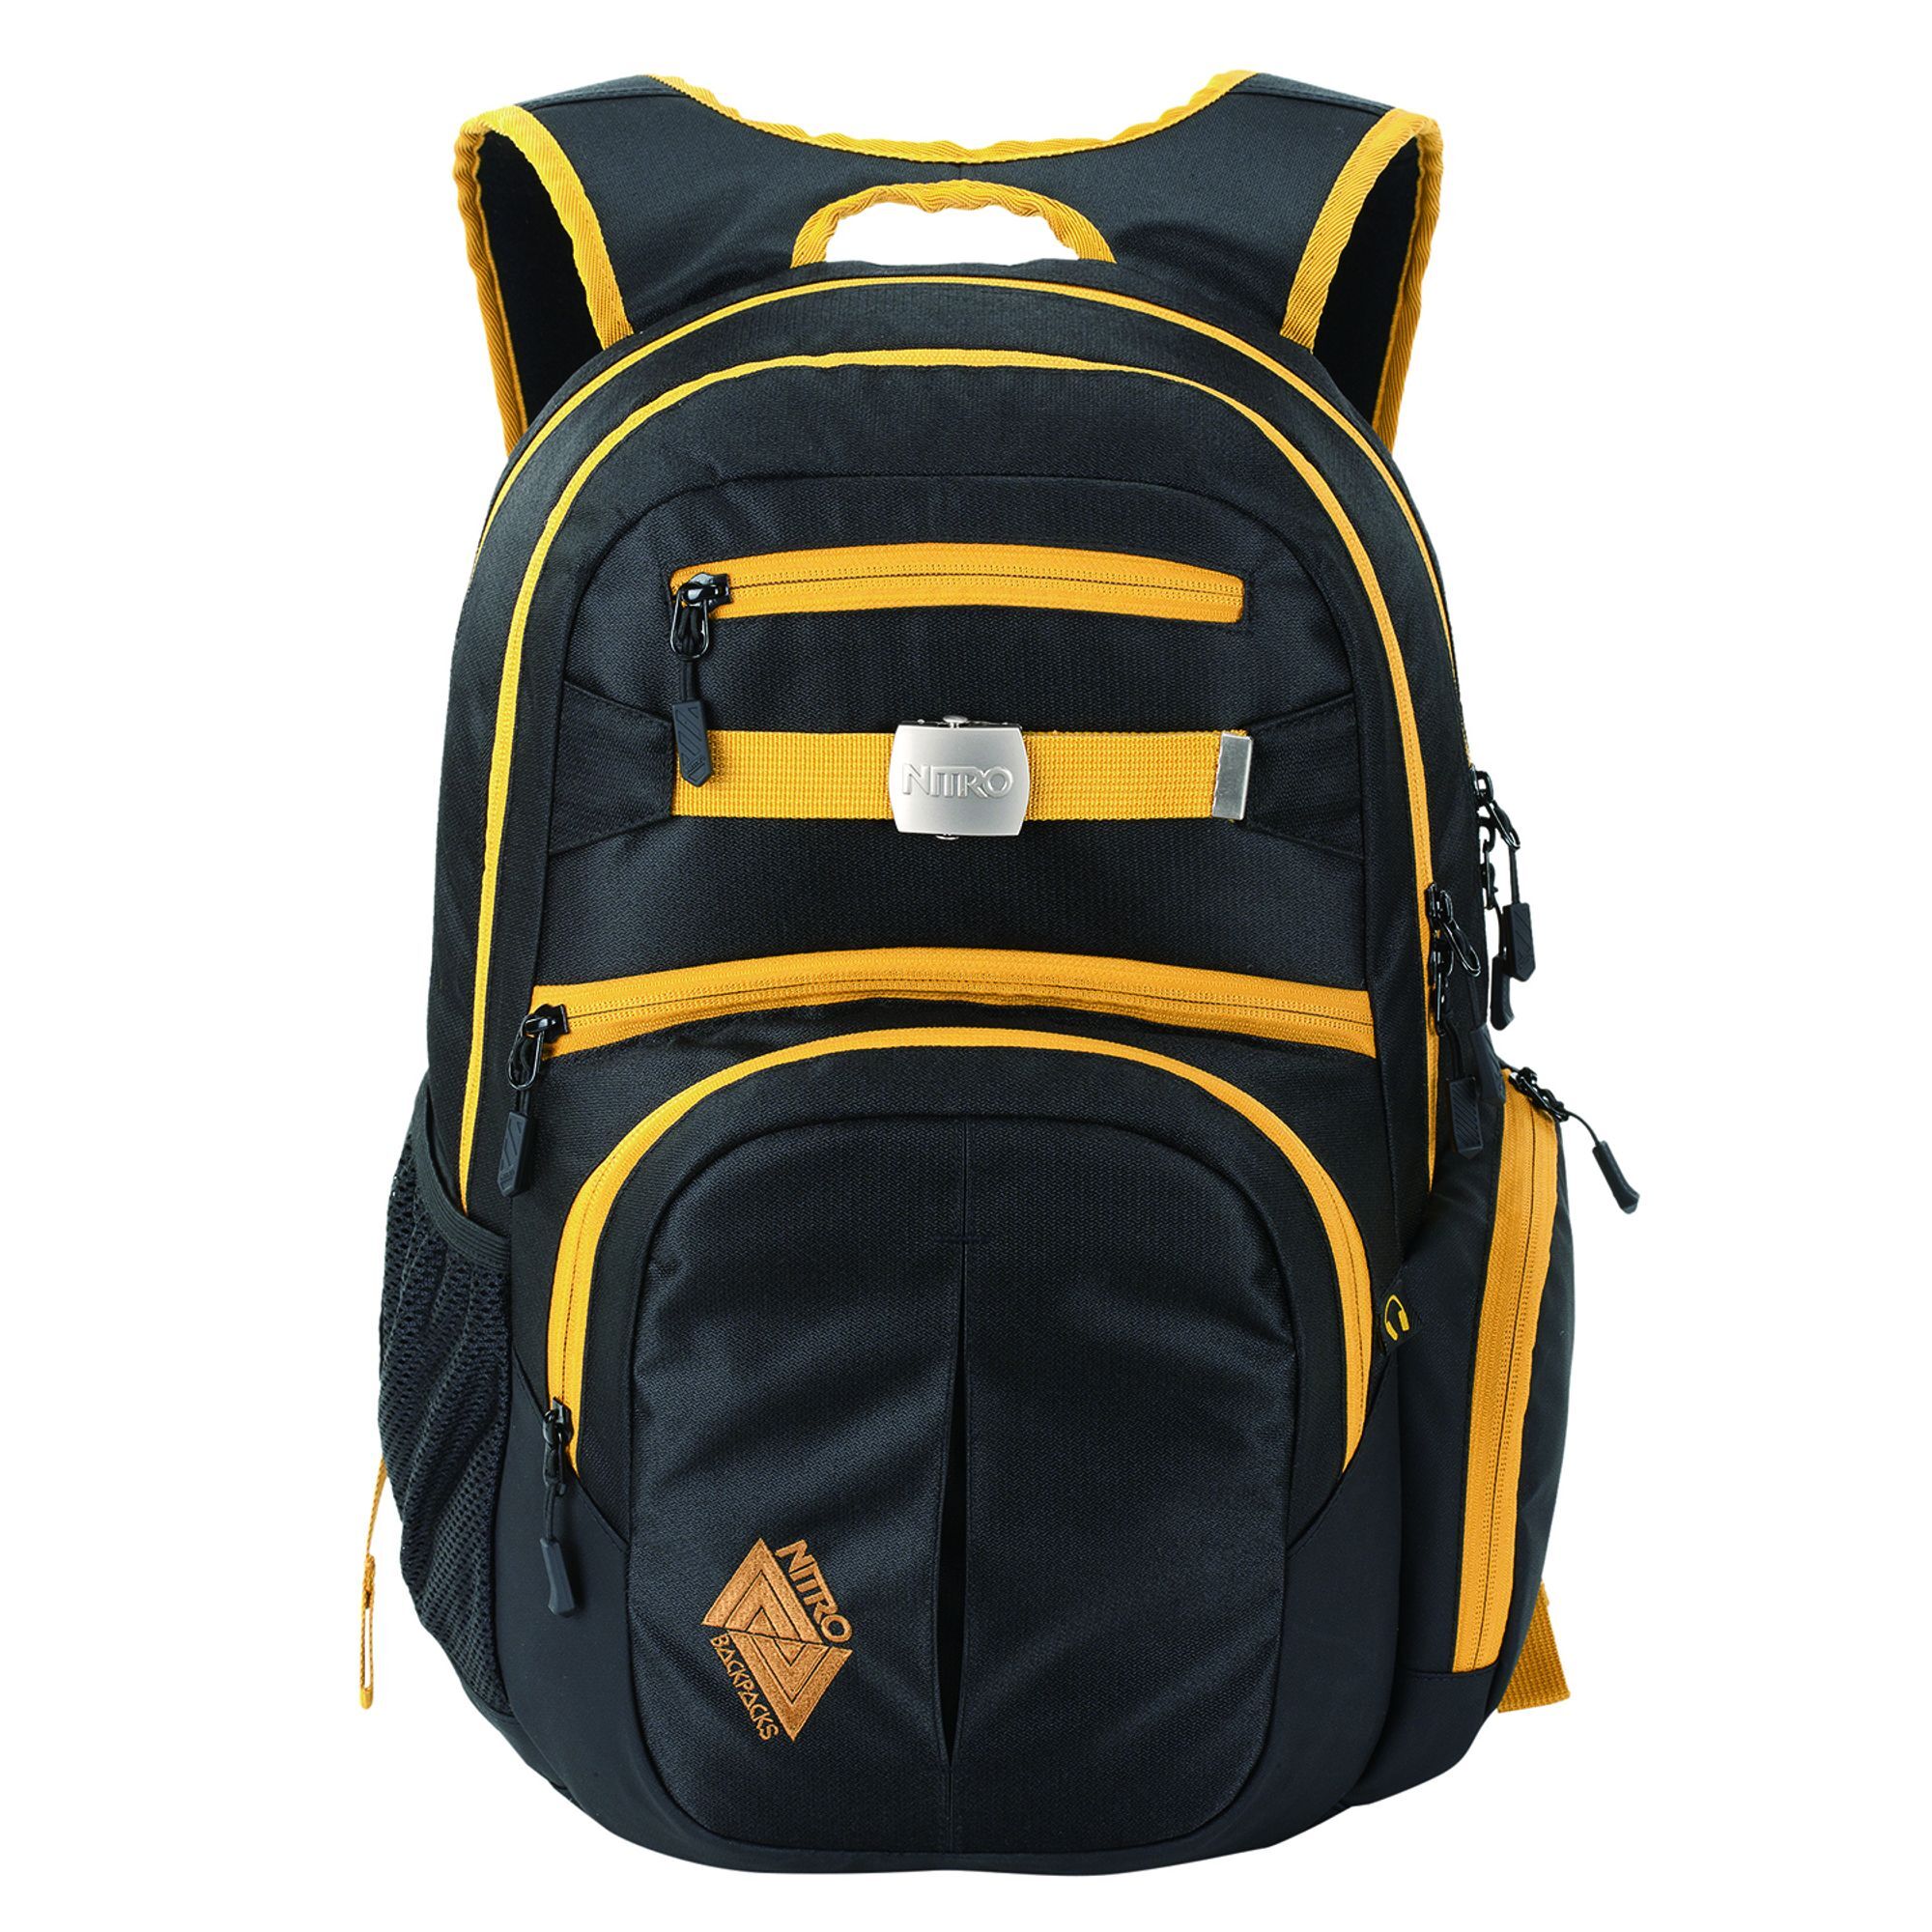 Рюкзак Nitro Daypack Hero 52 cm Laptopfach, цвет golden black